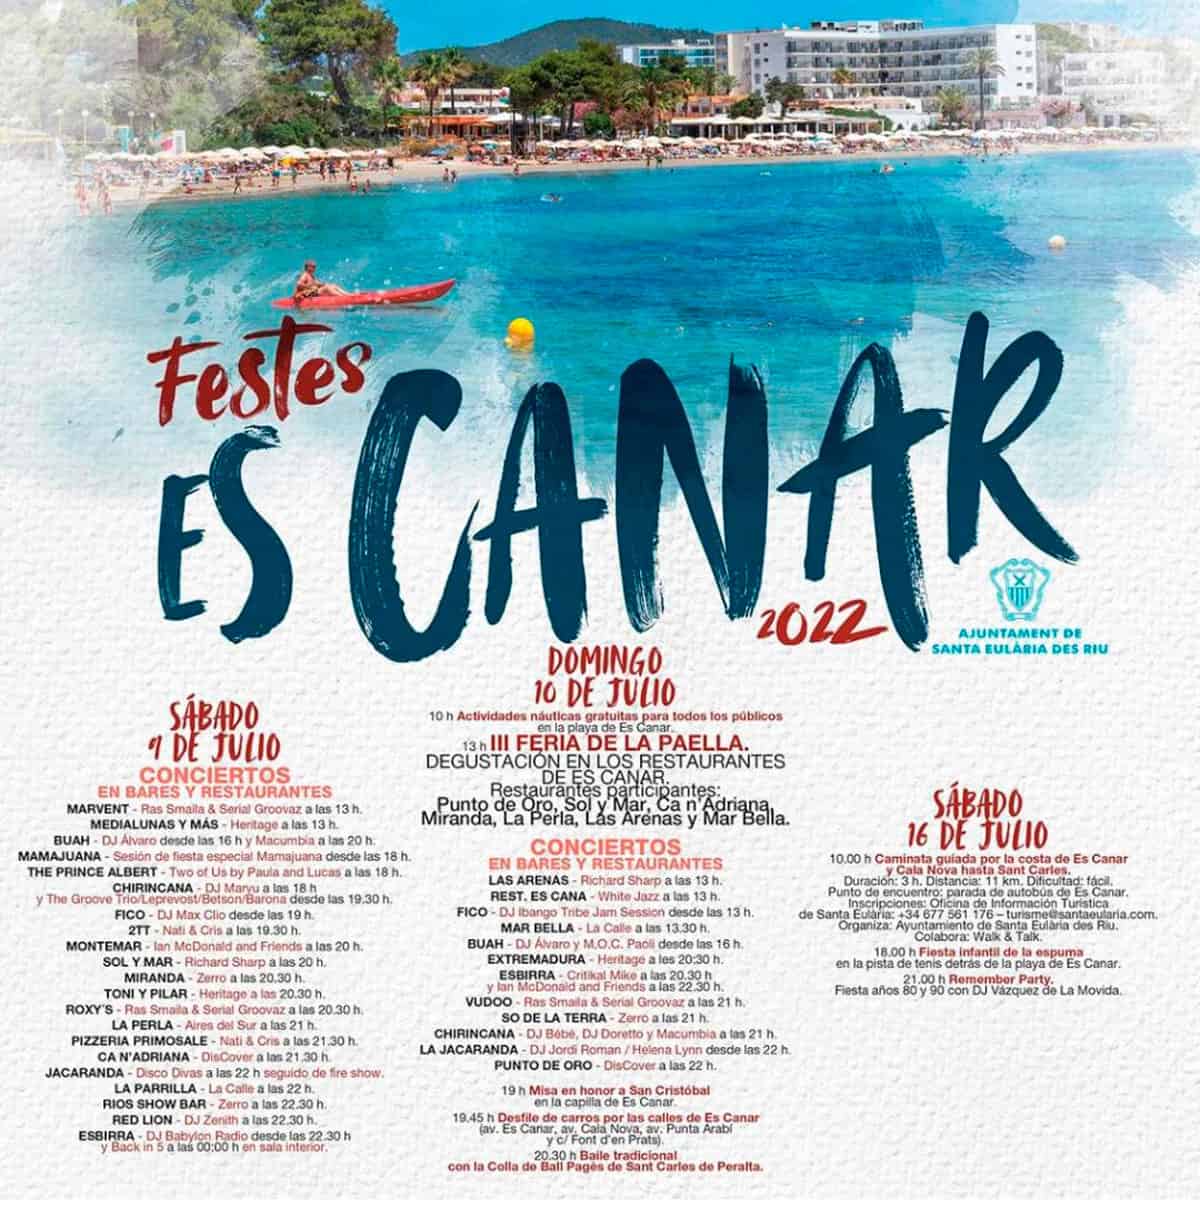 fêtes-de-es-canar-ibiza-2022-welcometoibiza